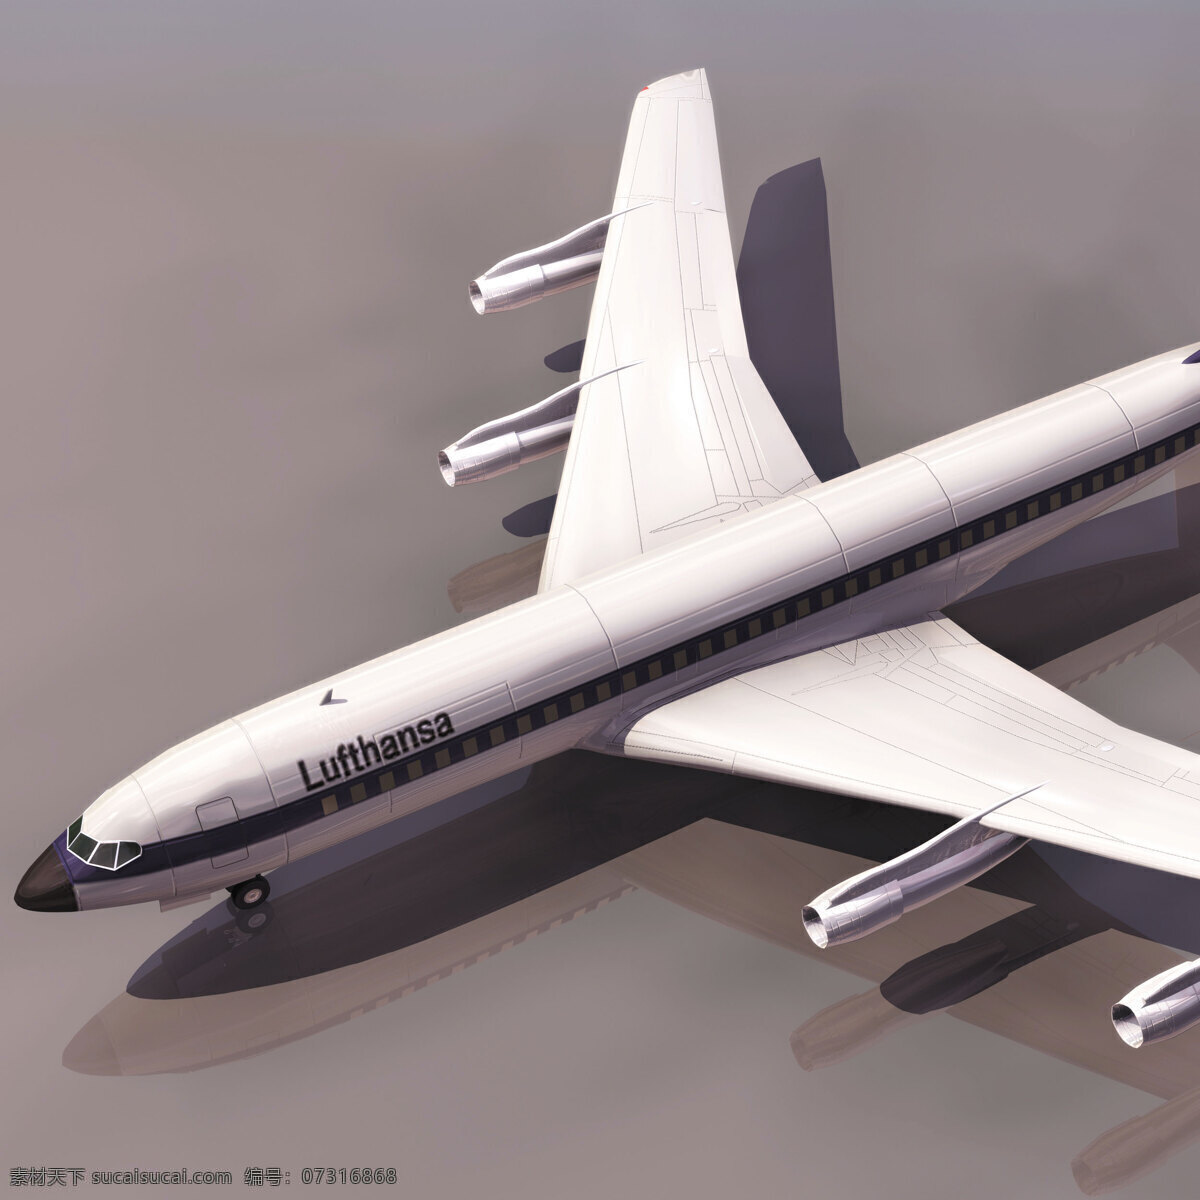 大型 波音 飞机模型 3d 客机 航模 3d模型素材 其他3d模型